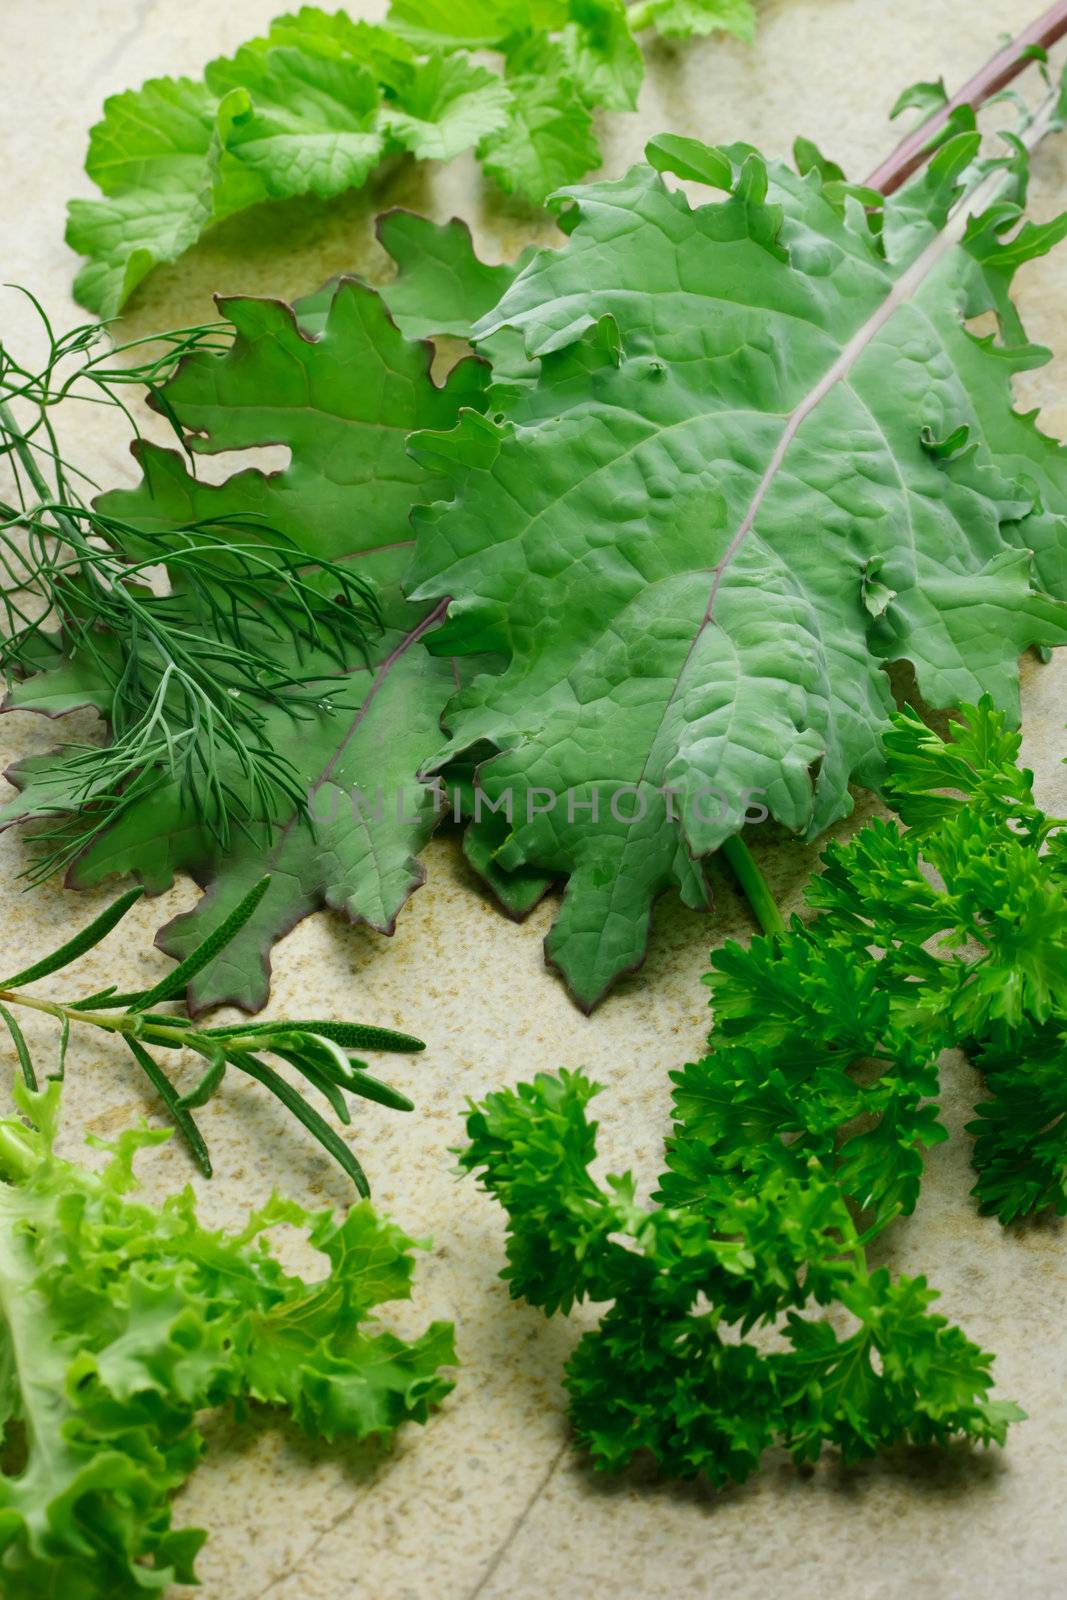 Variety of leafy vegetables by melpomene